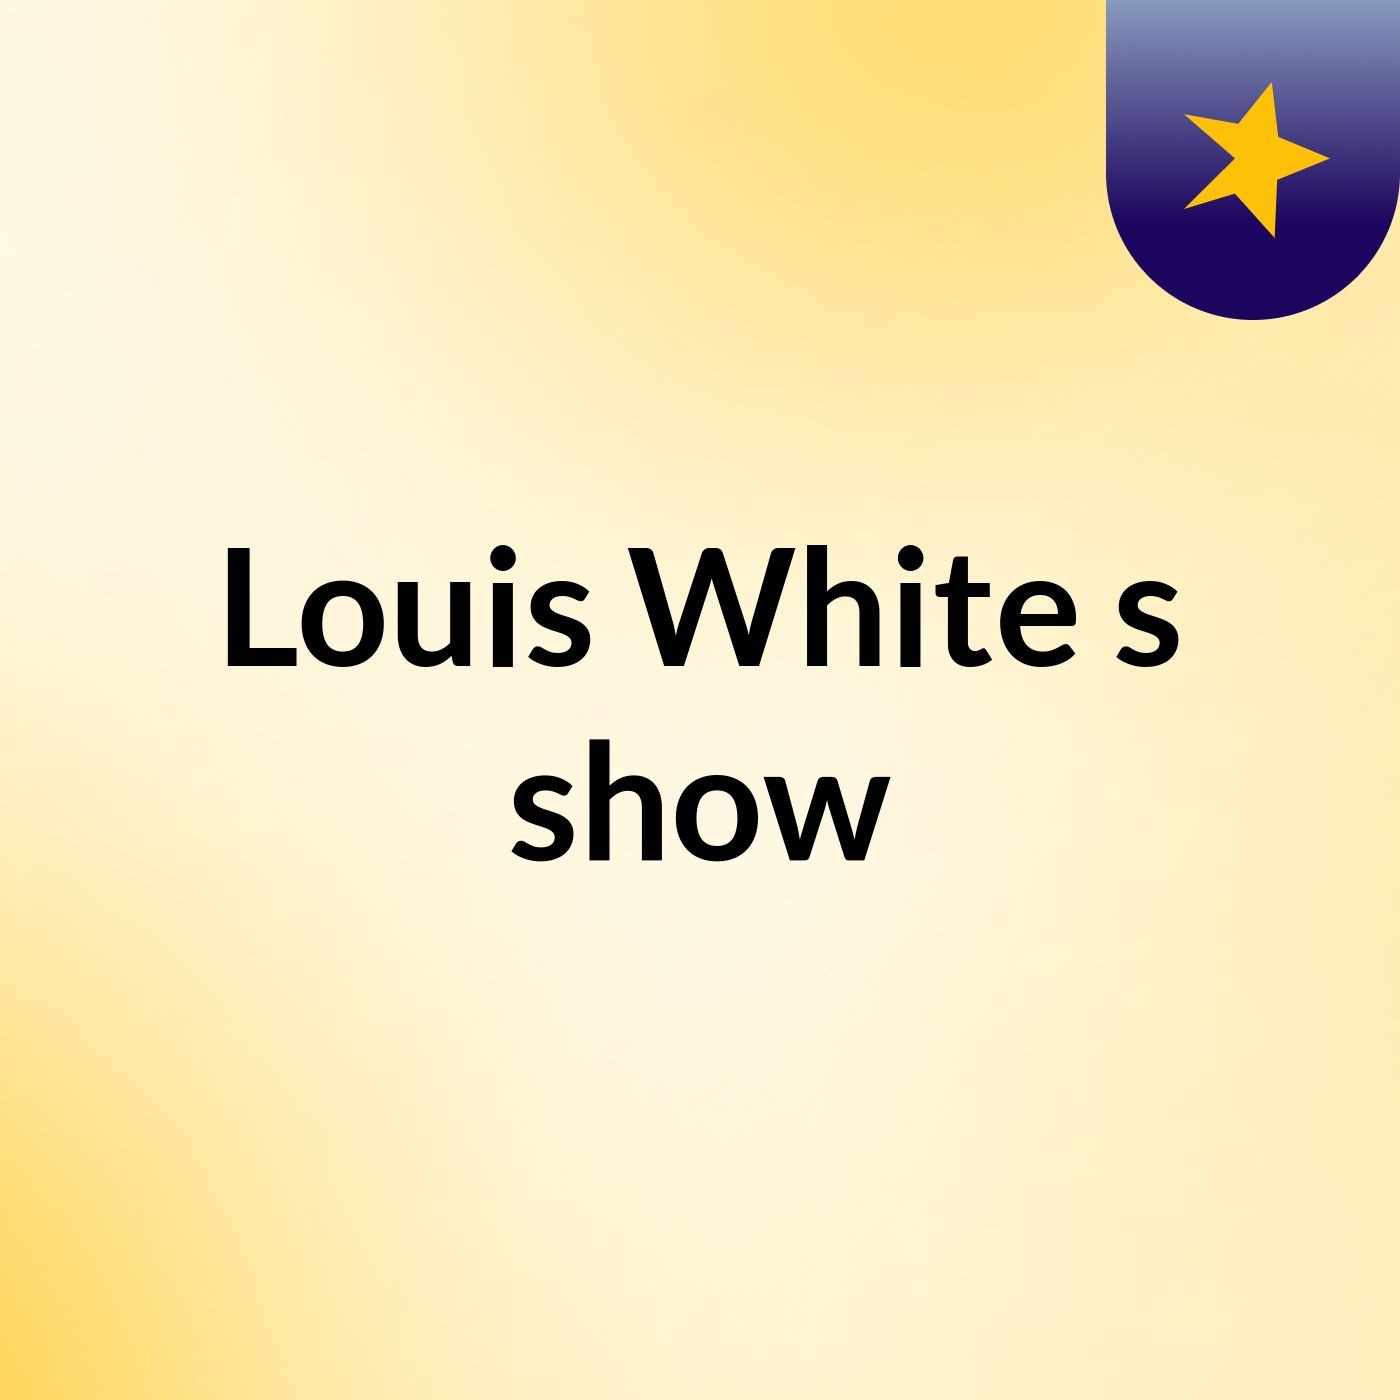 Louis White's show